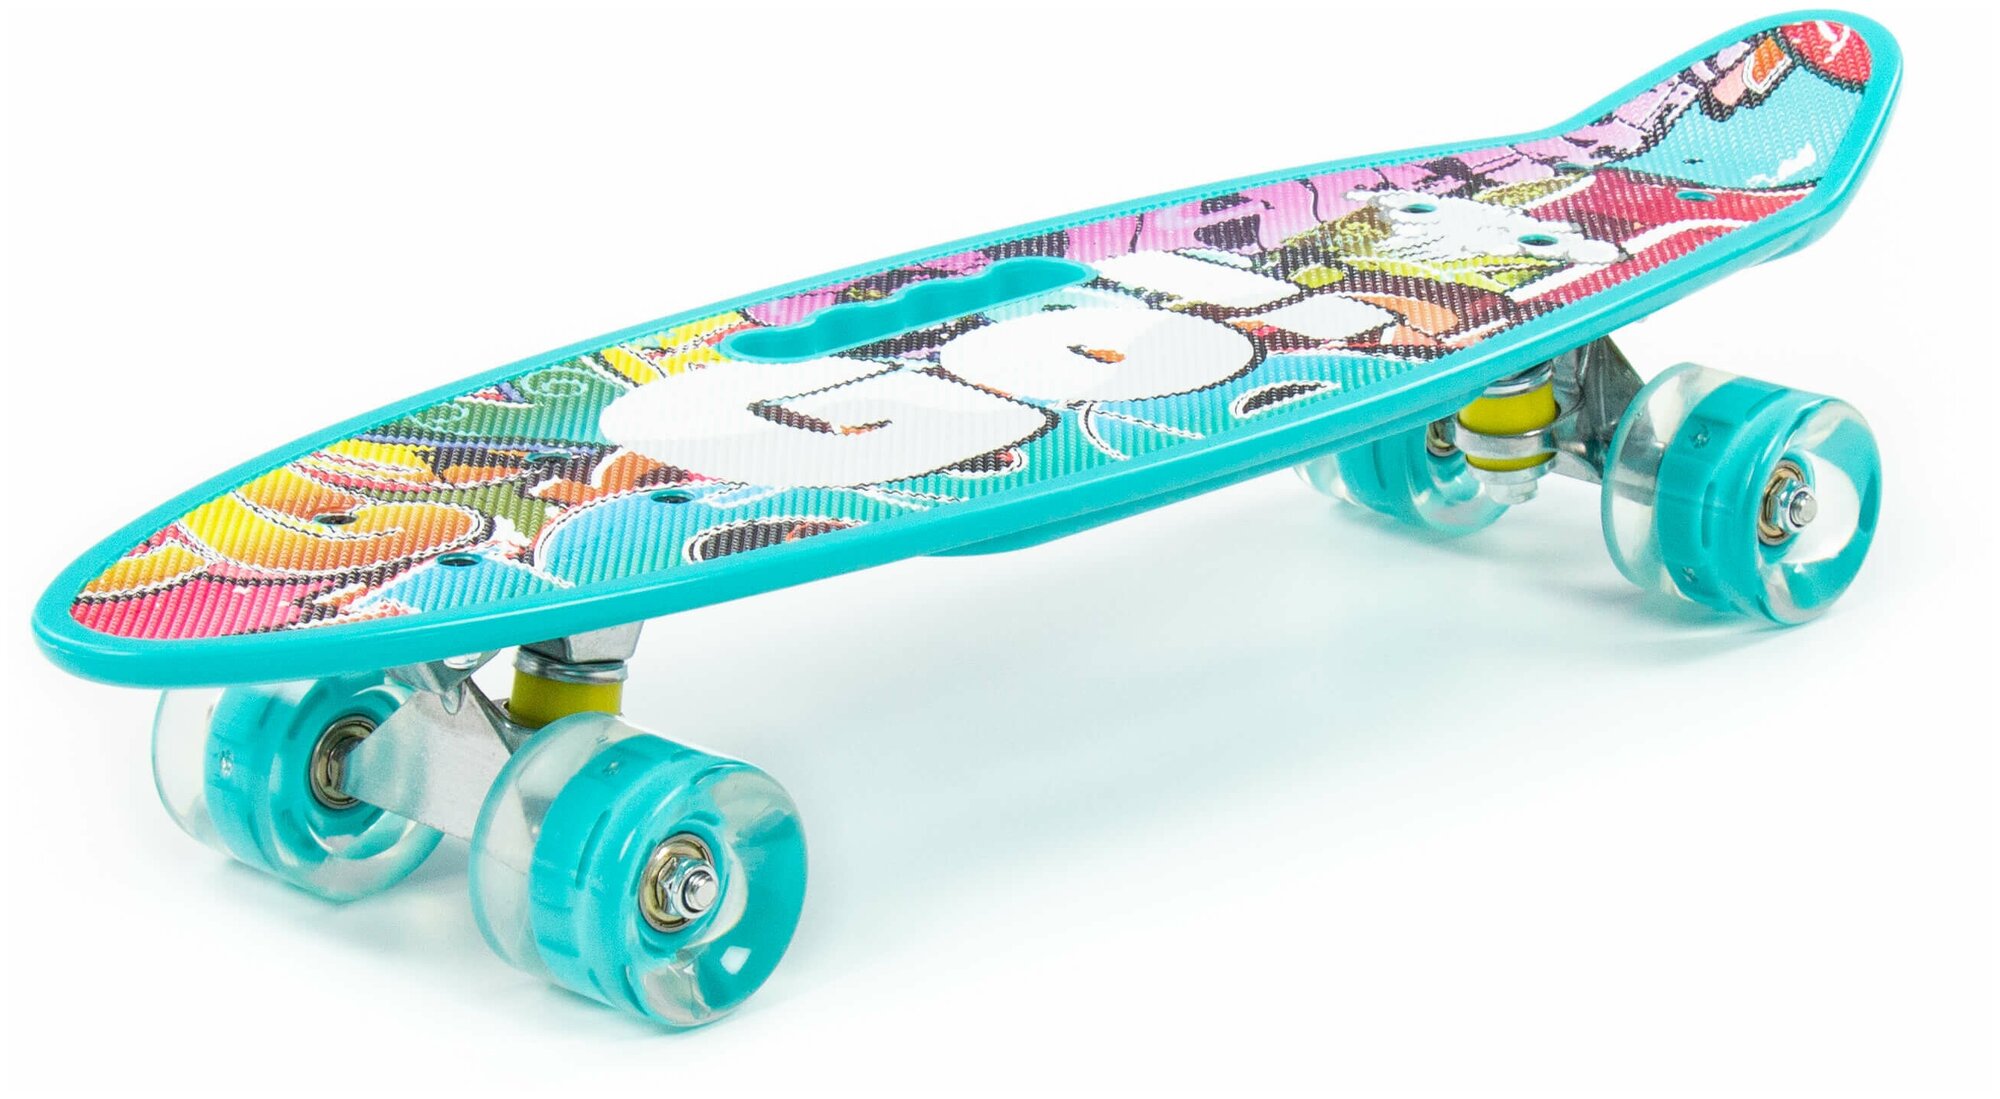 Скейт, скейтборд, роликовая доска детская, с ручкой, с наклейкой, светящиеся колеса, размер - 59 х 16 х 11 см.